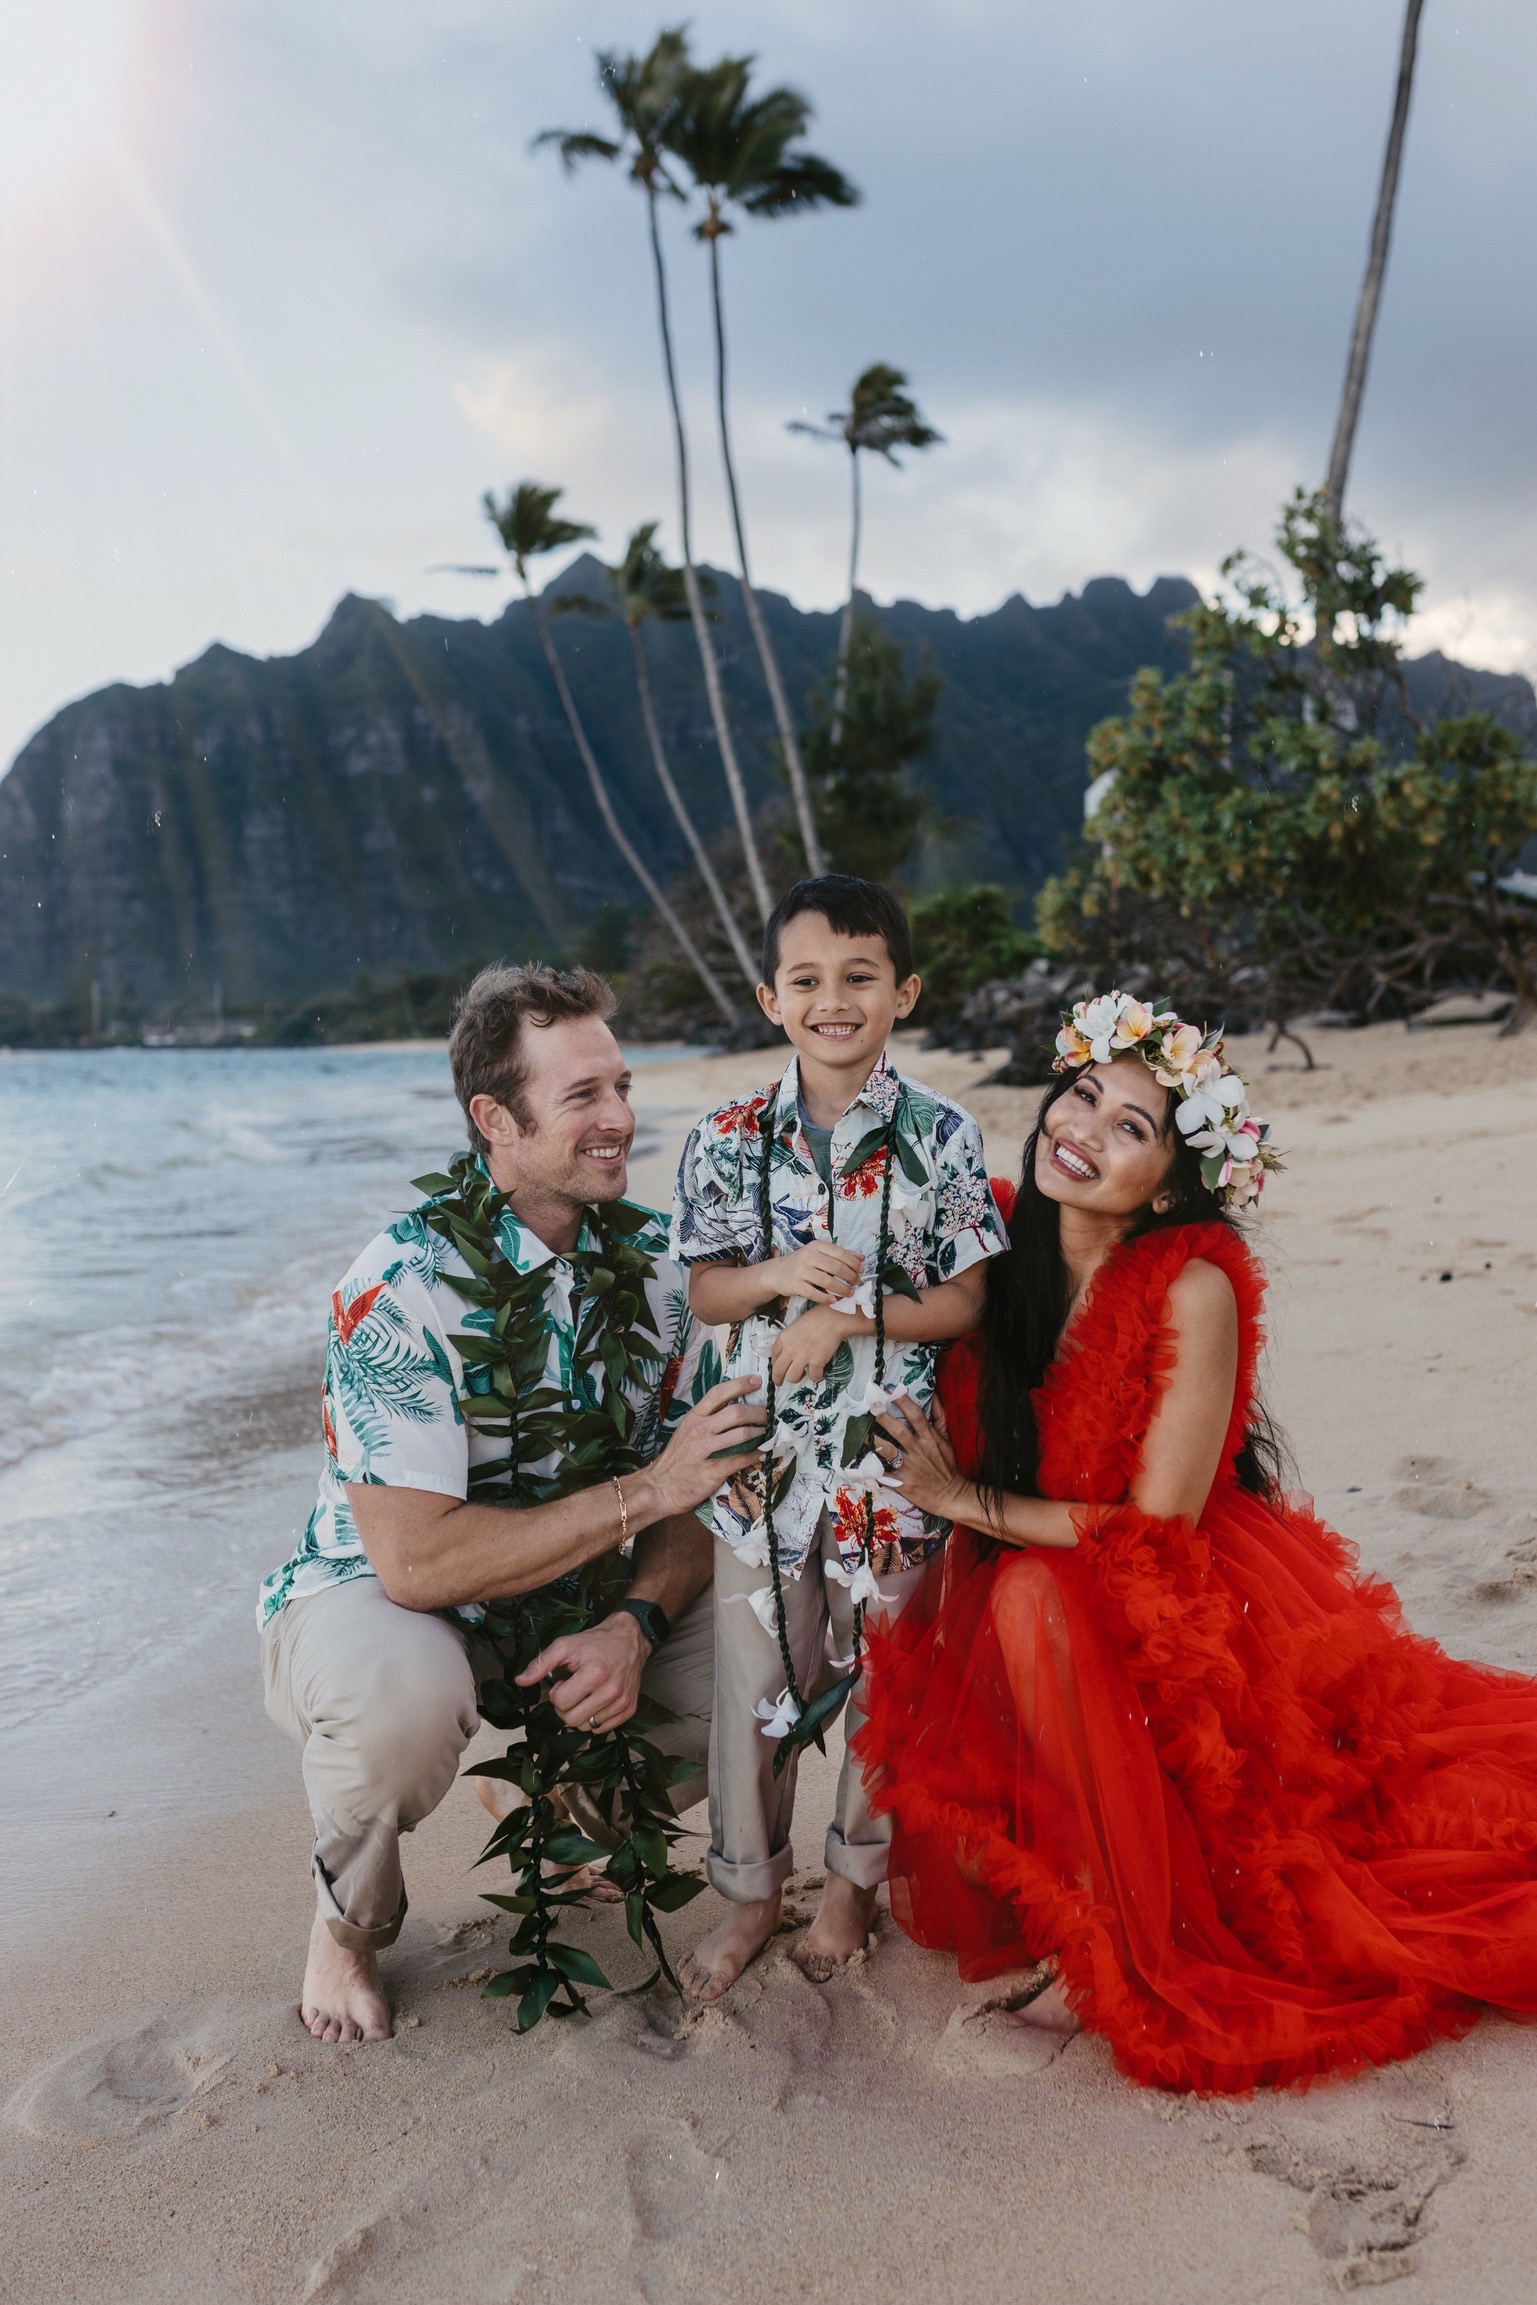 Hawaii family beach photoshoot, Oahu, family photography, travel photography 